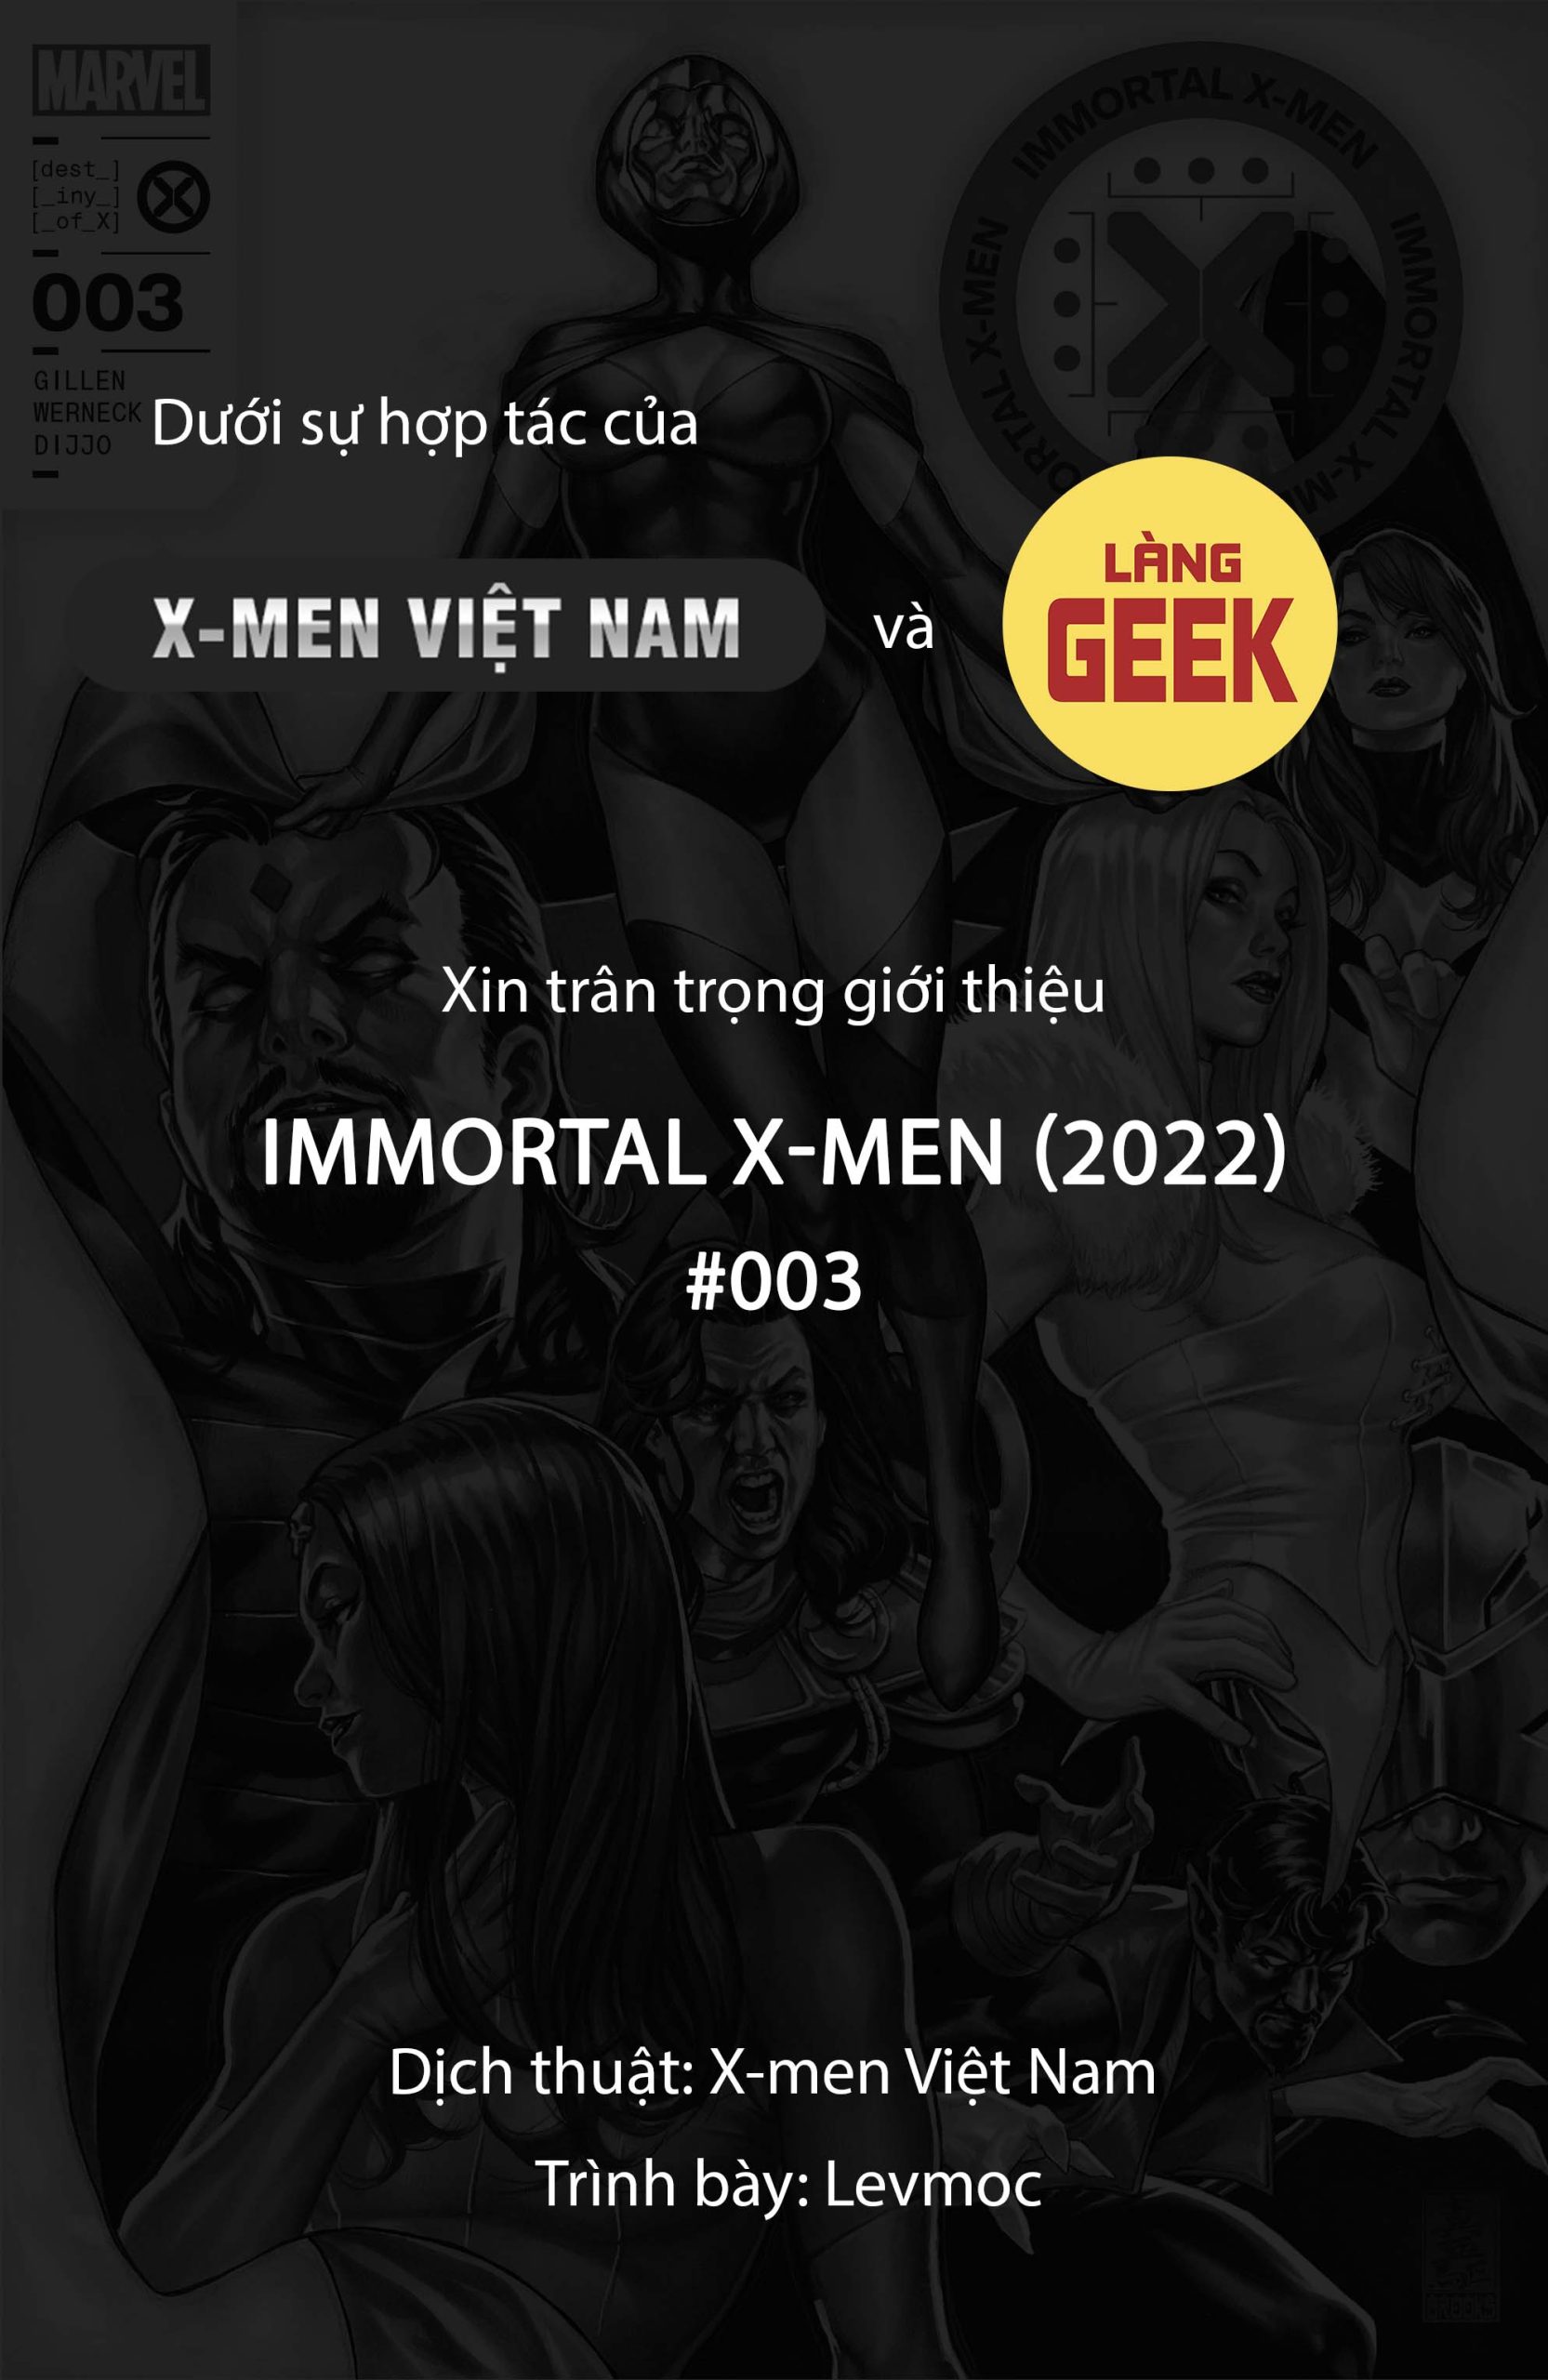 https://langgeek.net/wp-content/webpc-passthru.php?src=https://langgeek.net/wp-content/uploads/2022/06/Immortal-X-Men-2022-003-000-1-scaled.jpg&nocache=1